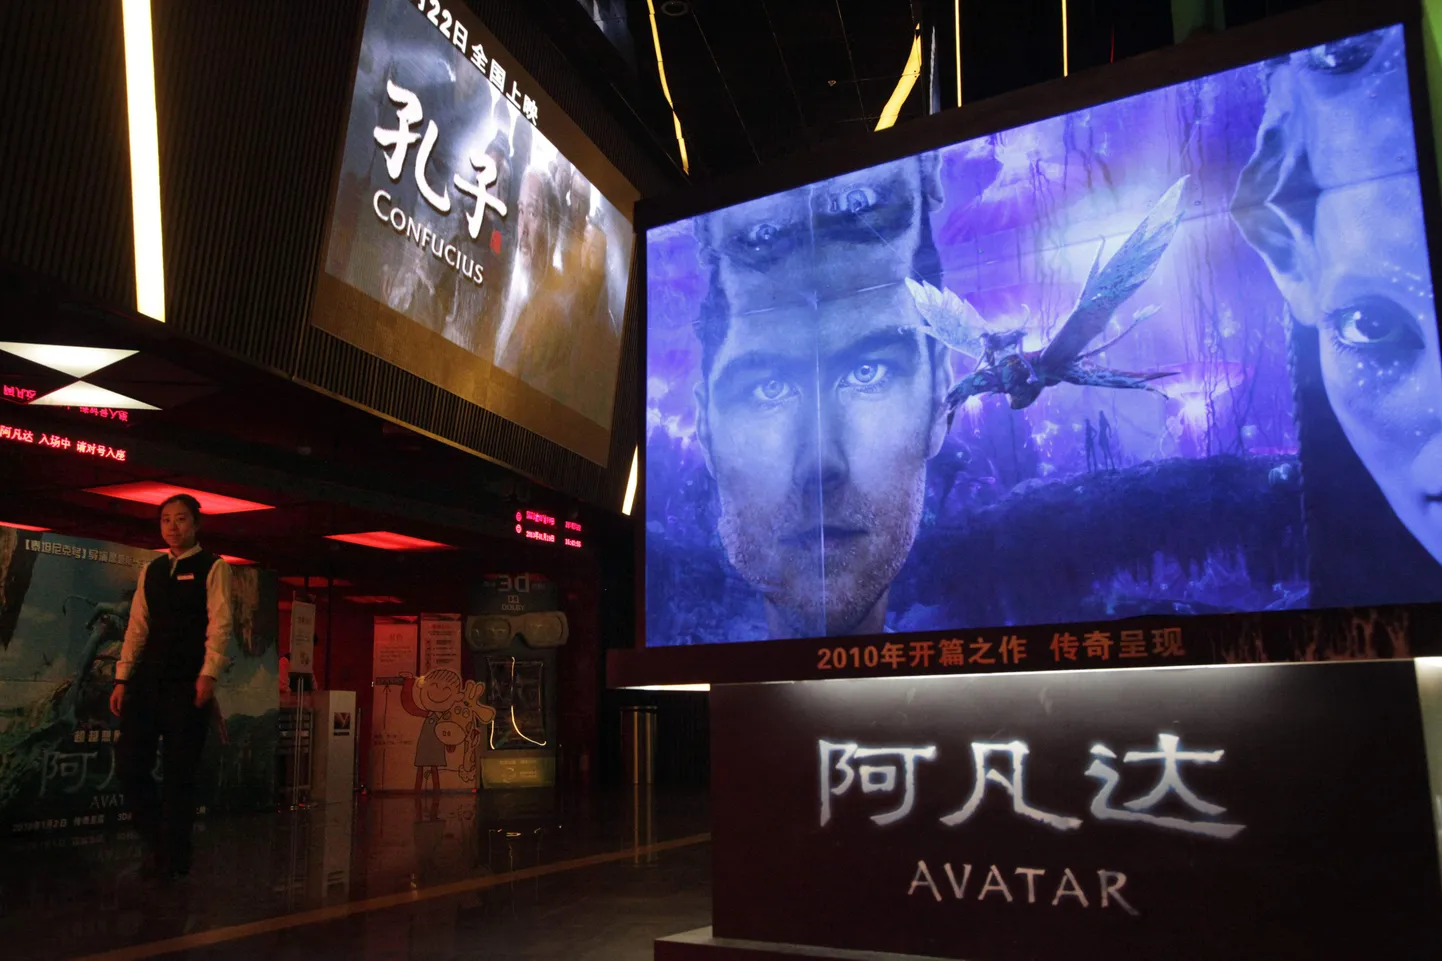 Filmi Avatar reklaamid Hiinas